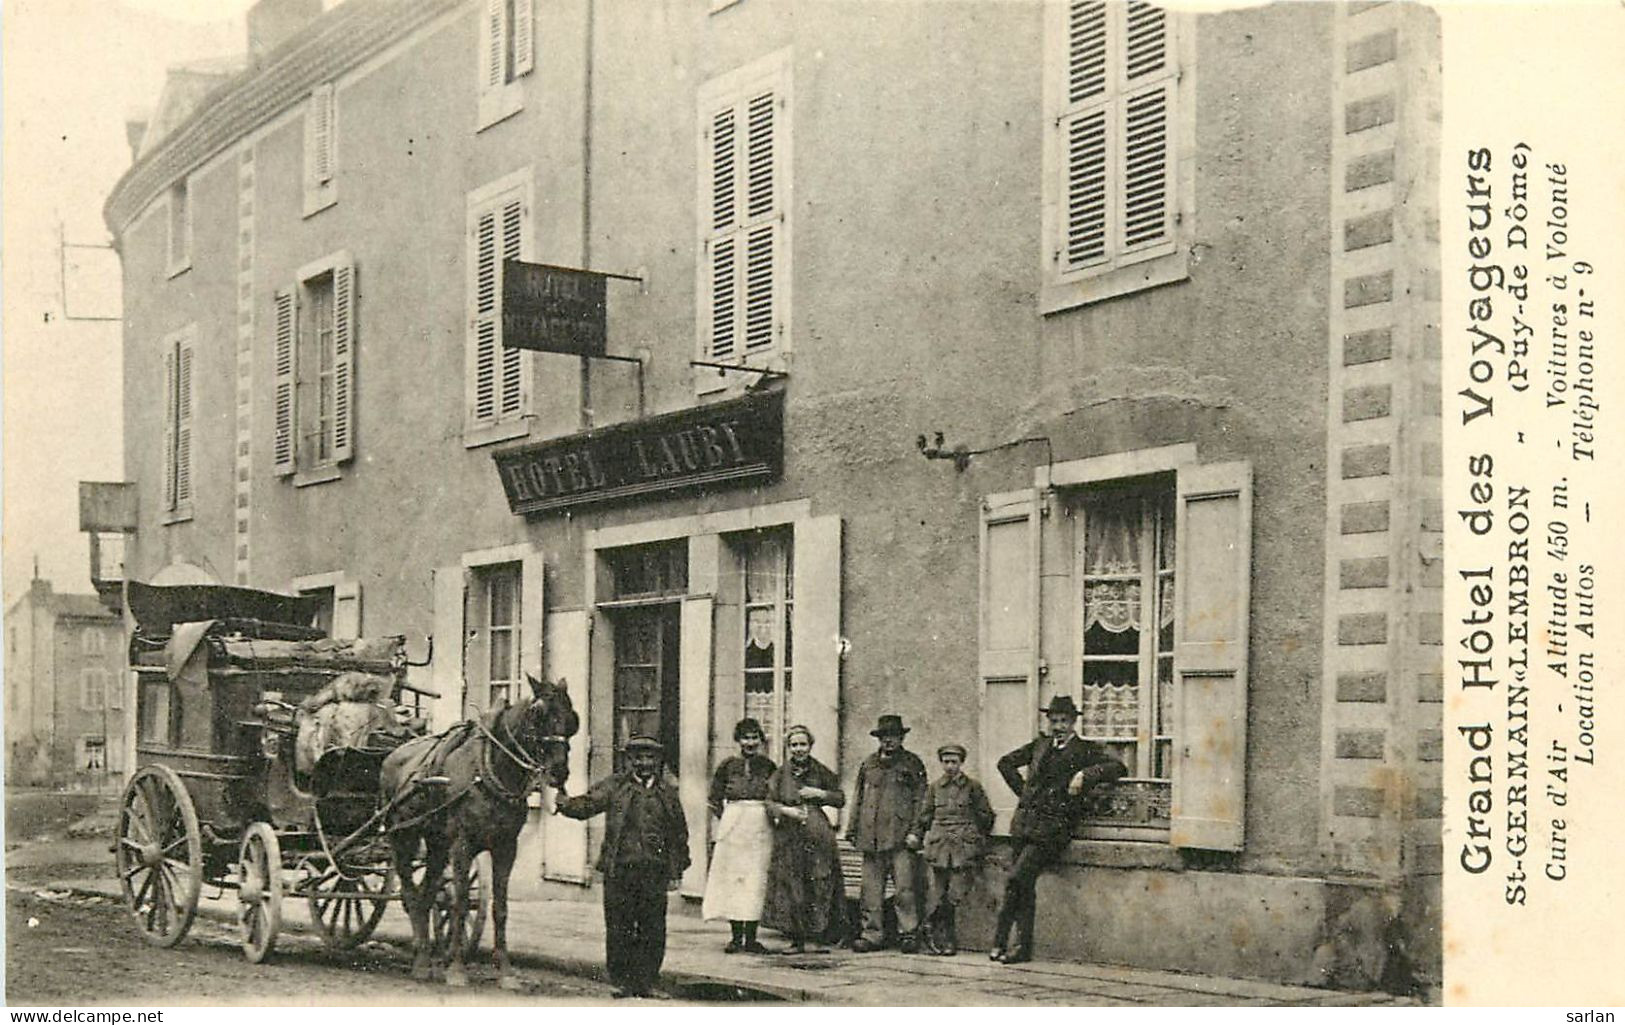 63 , ST GERMAIN LEMBRON , Grand Hotel Des Voyageurs  , Courrier Diligence , *  457 47 - Saint Germain Lembron